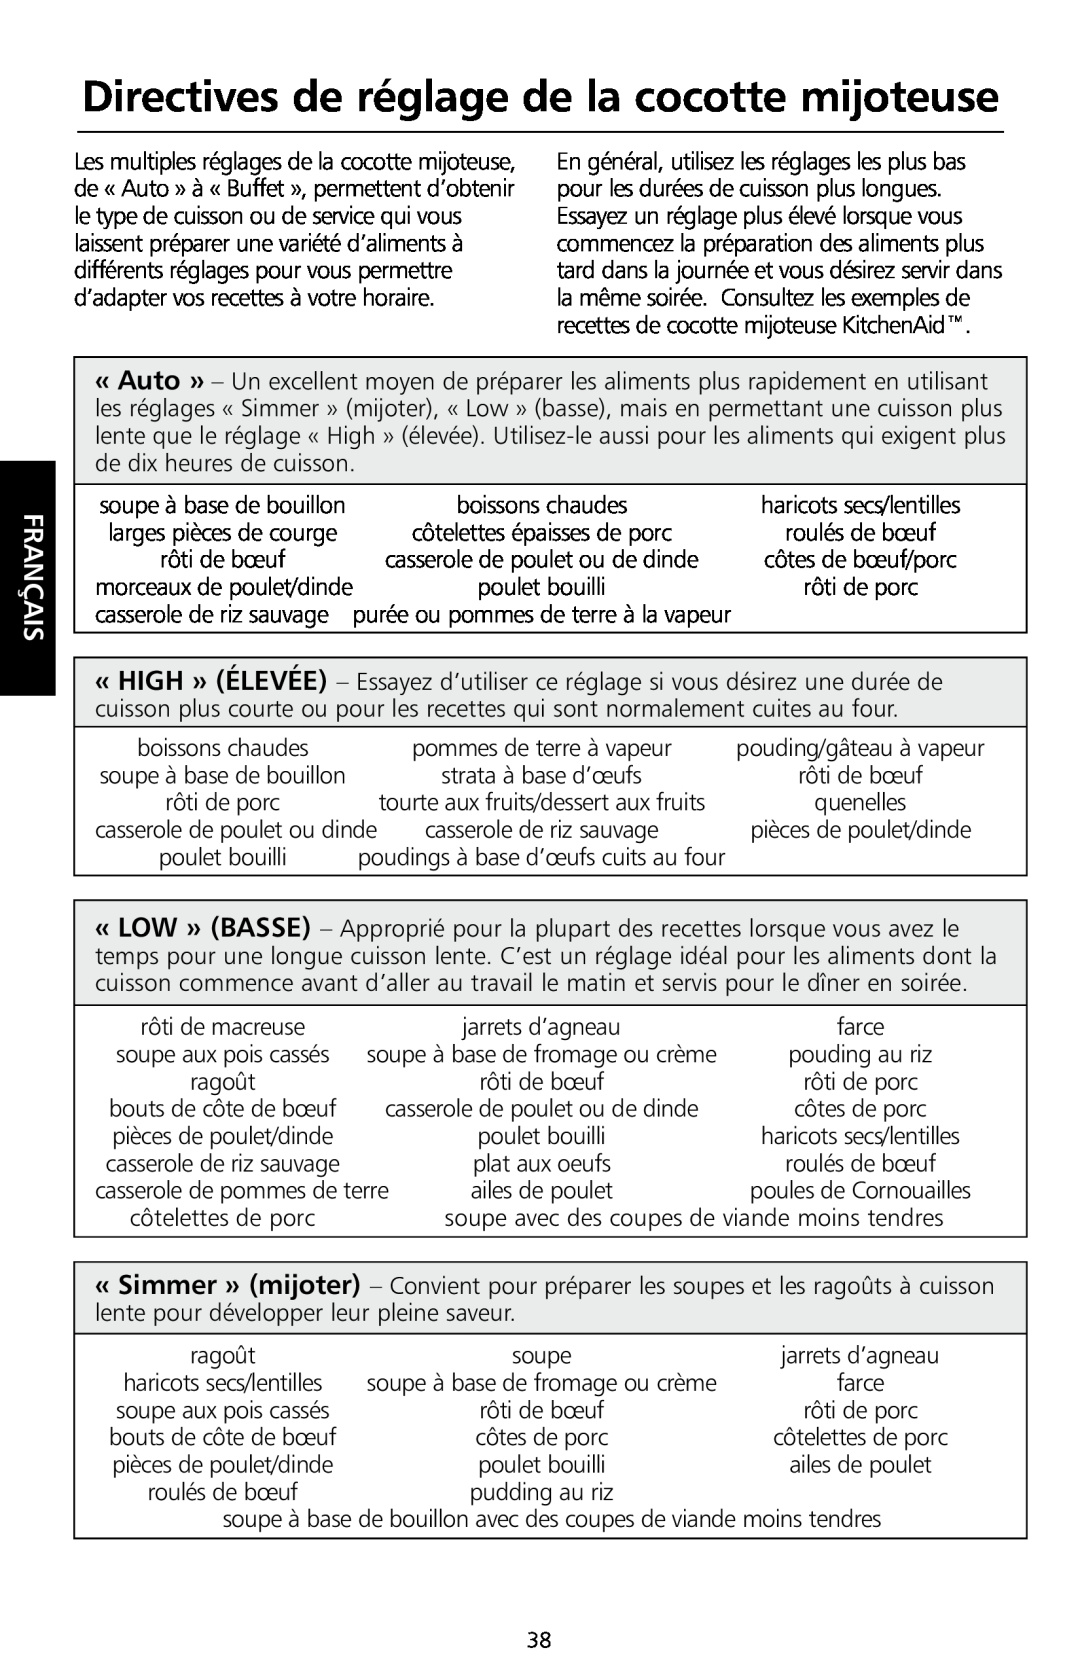 KitchenAid KSC700 manual Directives de réglage de la cocotte mijoteuse, Français 